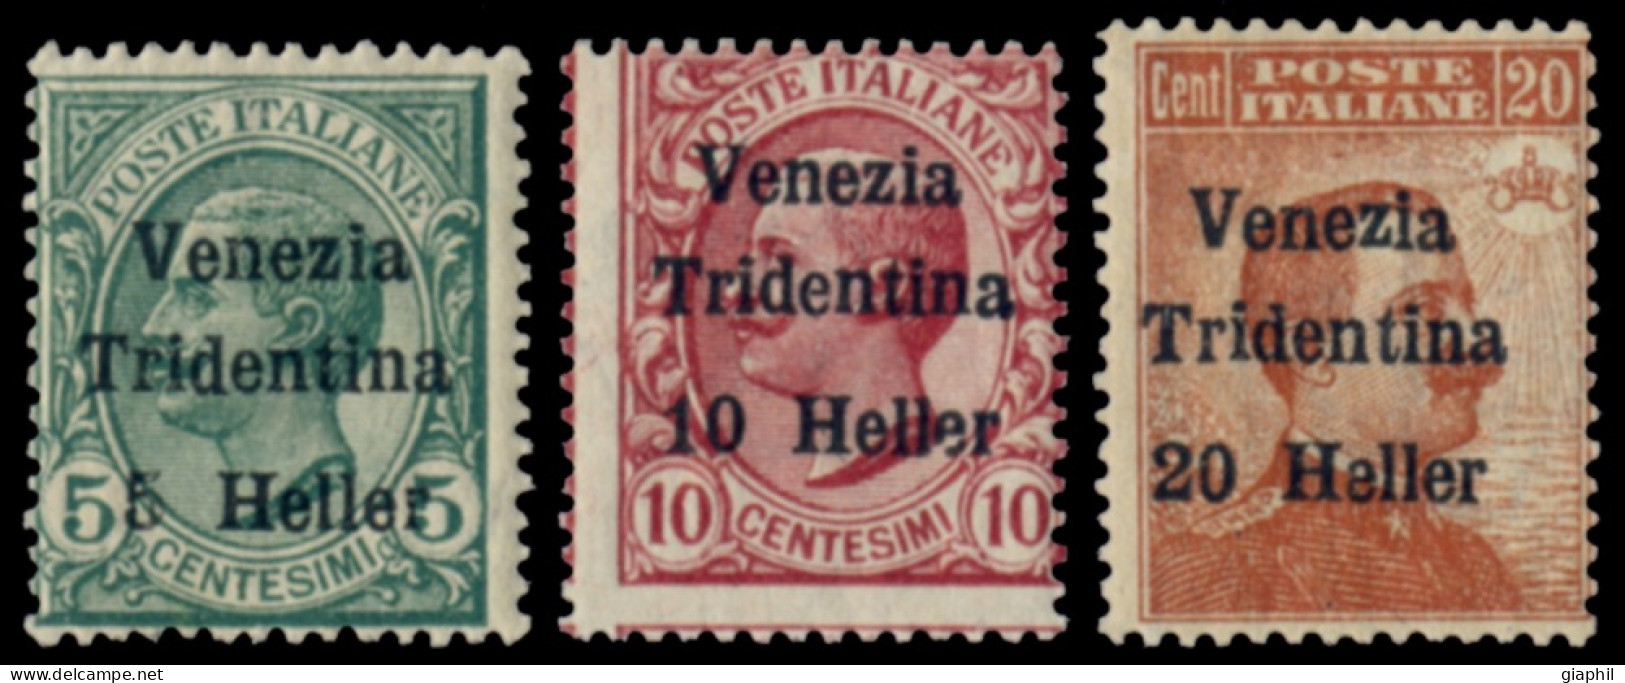 ITALY ITALIA TRENTINO-ALTO ADIGE 1919 SERIE COMPLETA (Sass. 28-30) NUOVA LINGUELLATA - Trento